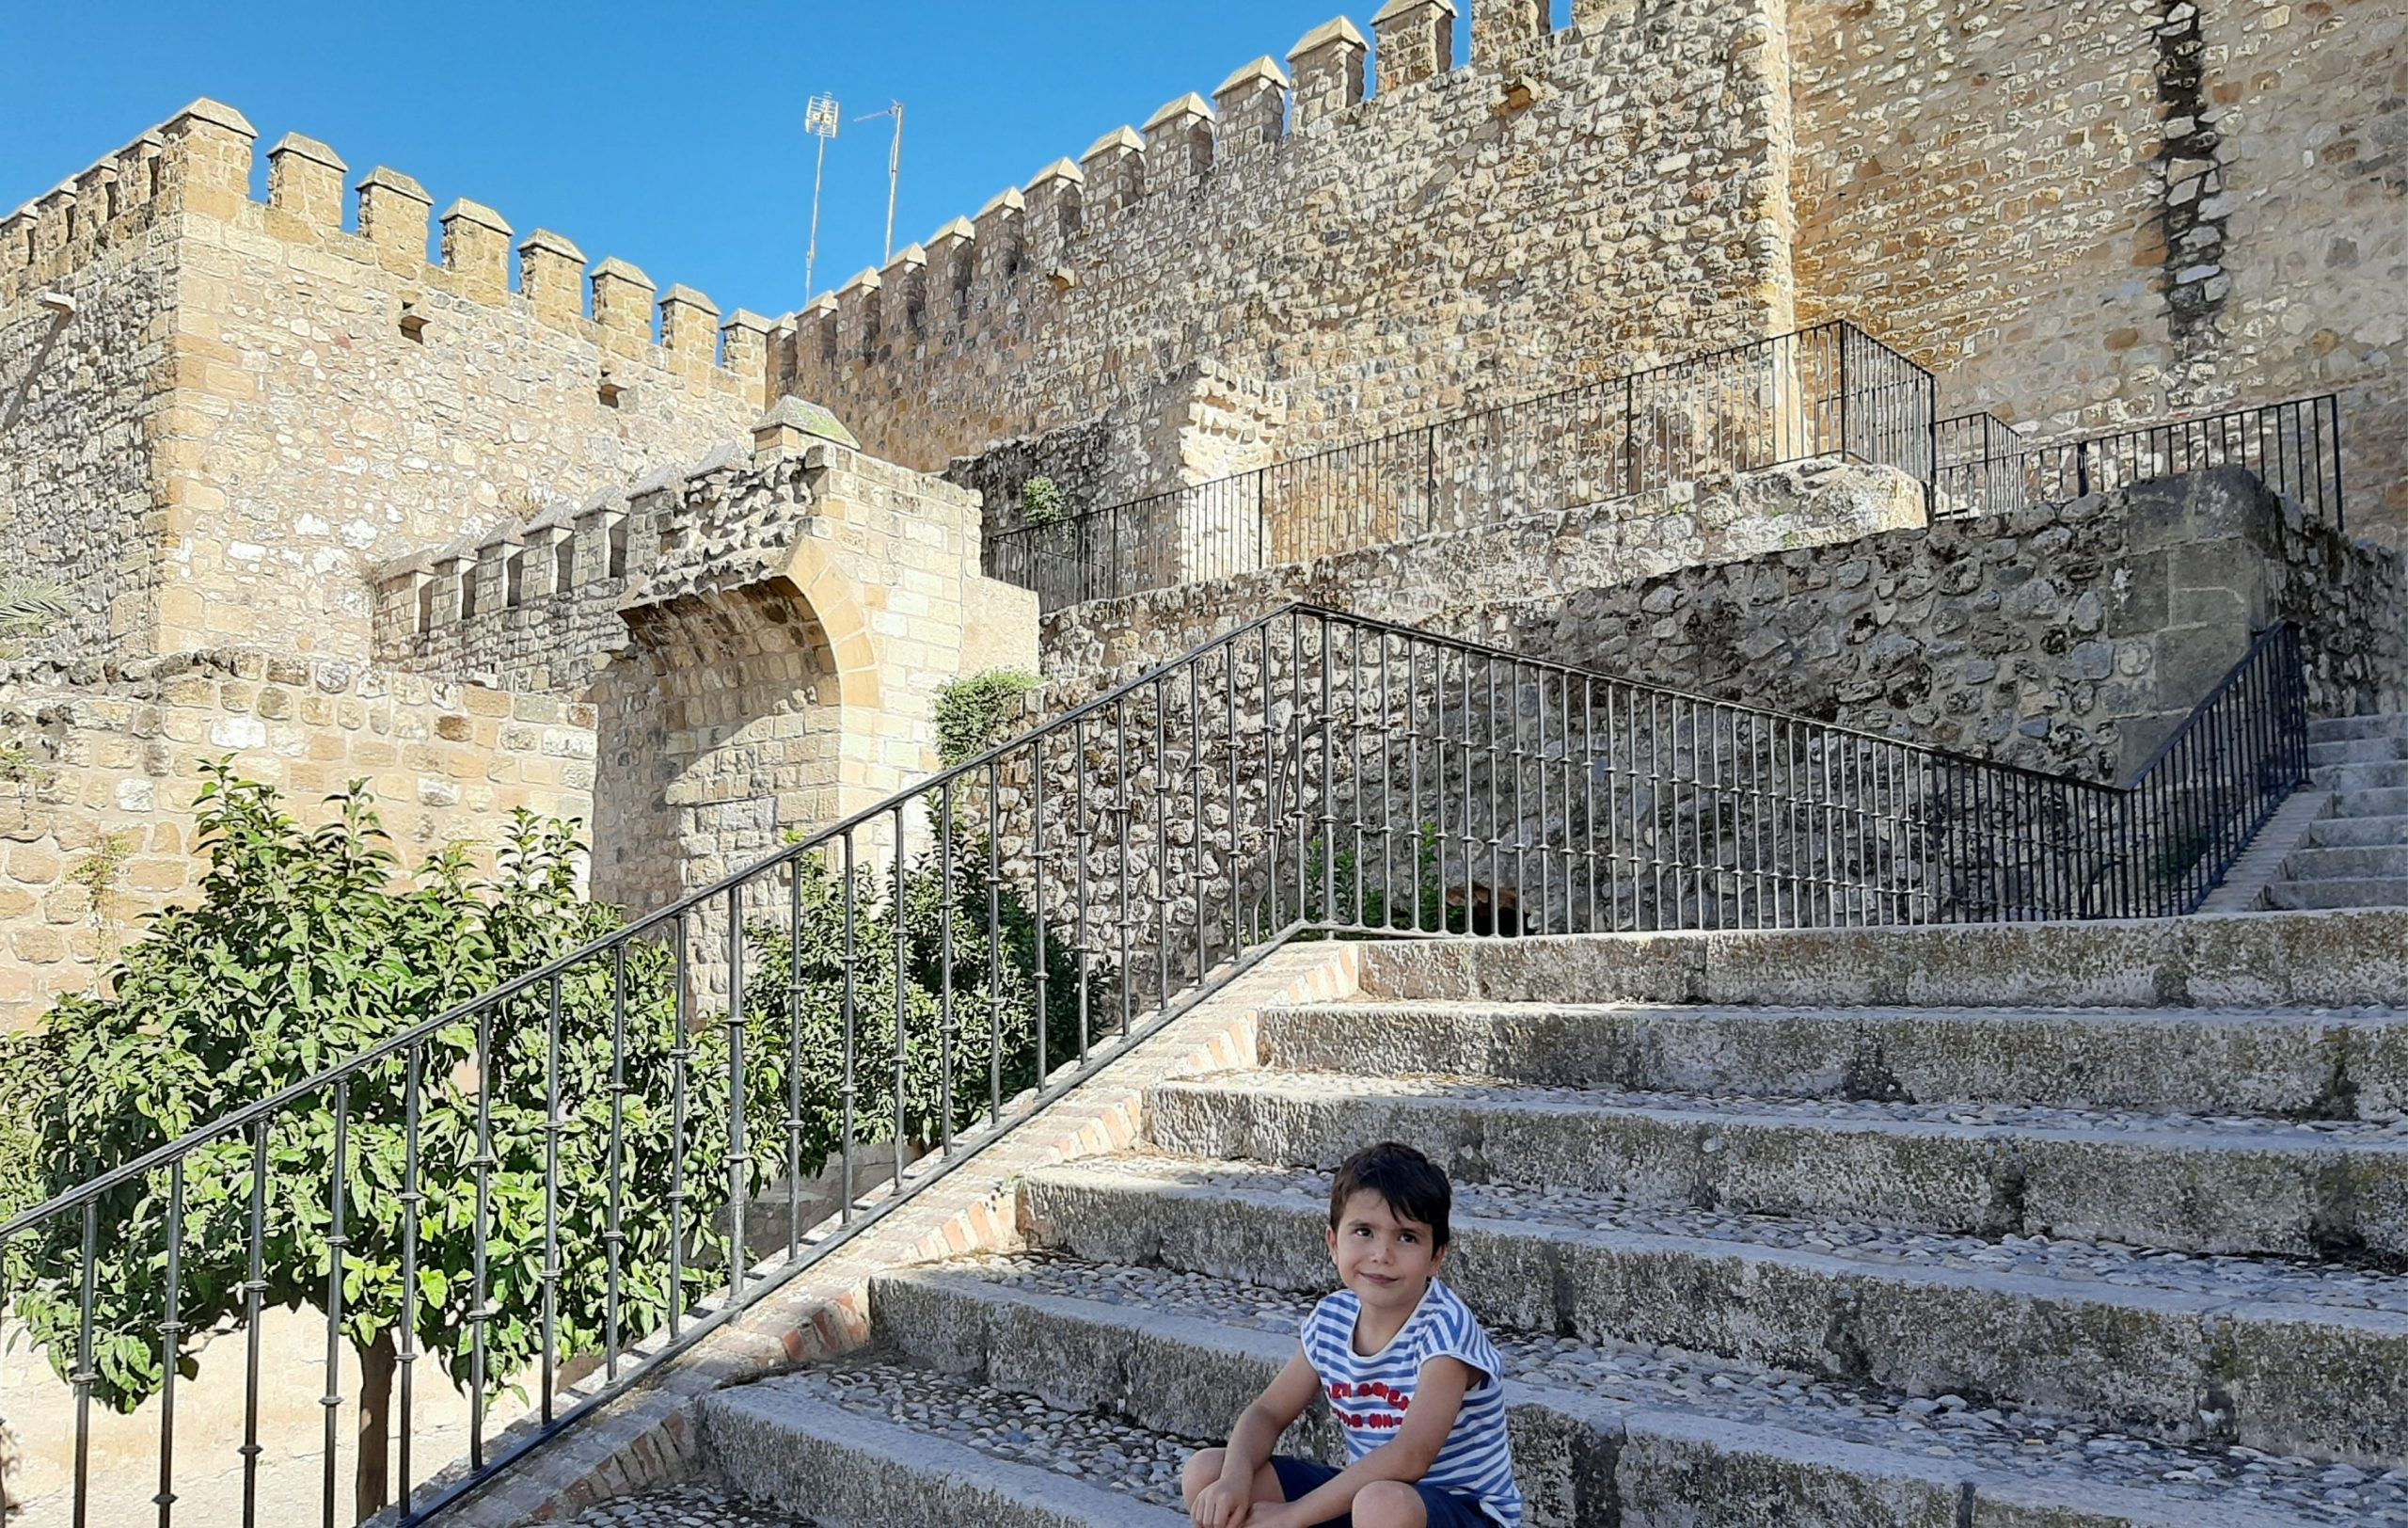 Castillo de Antequera, Alcazaba de Antequera